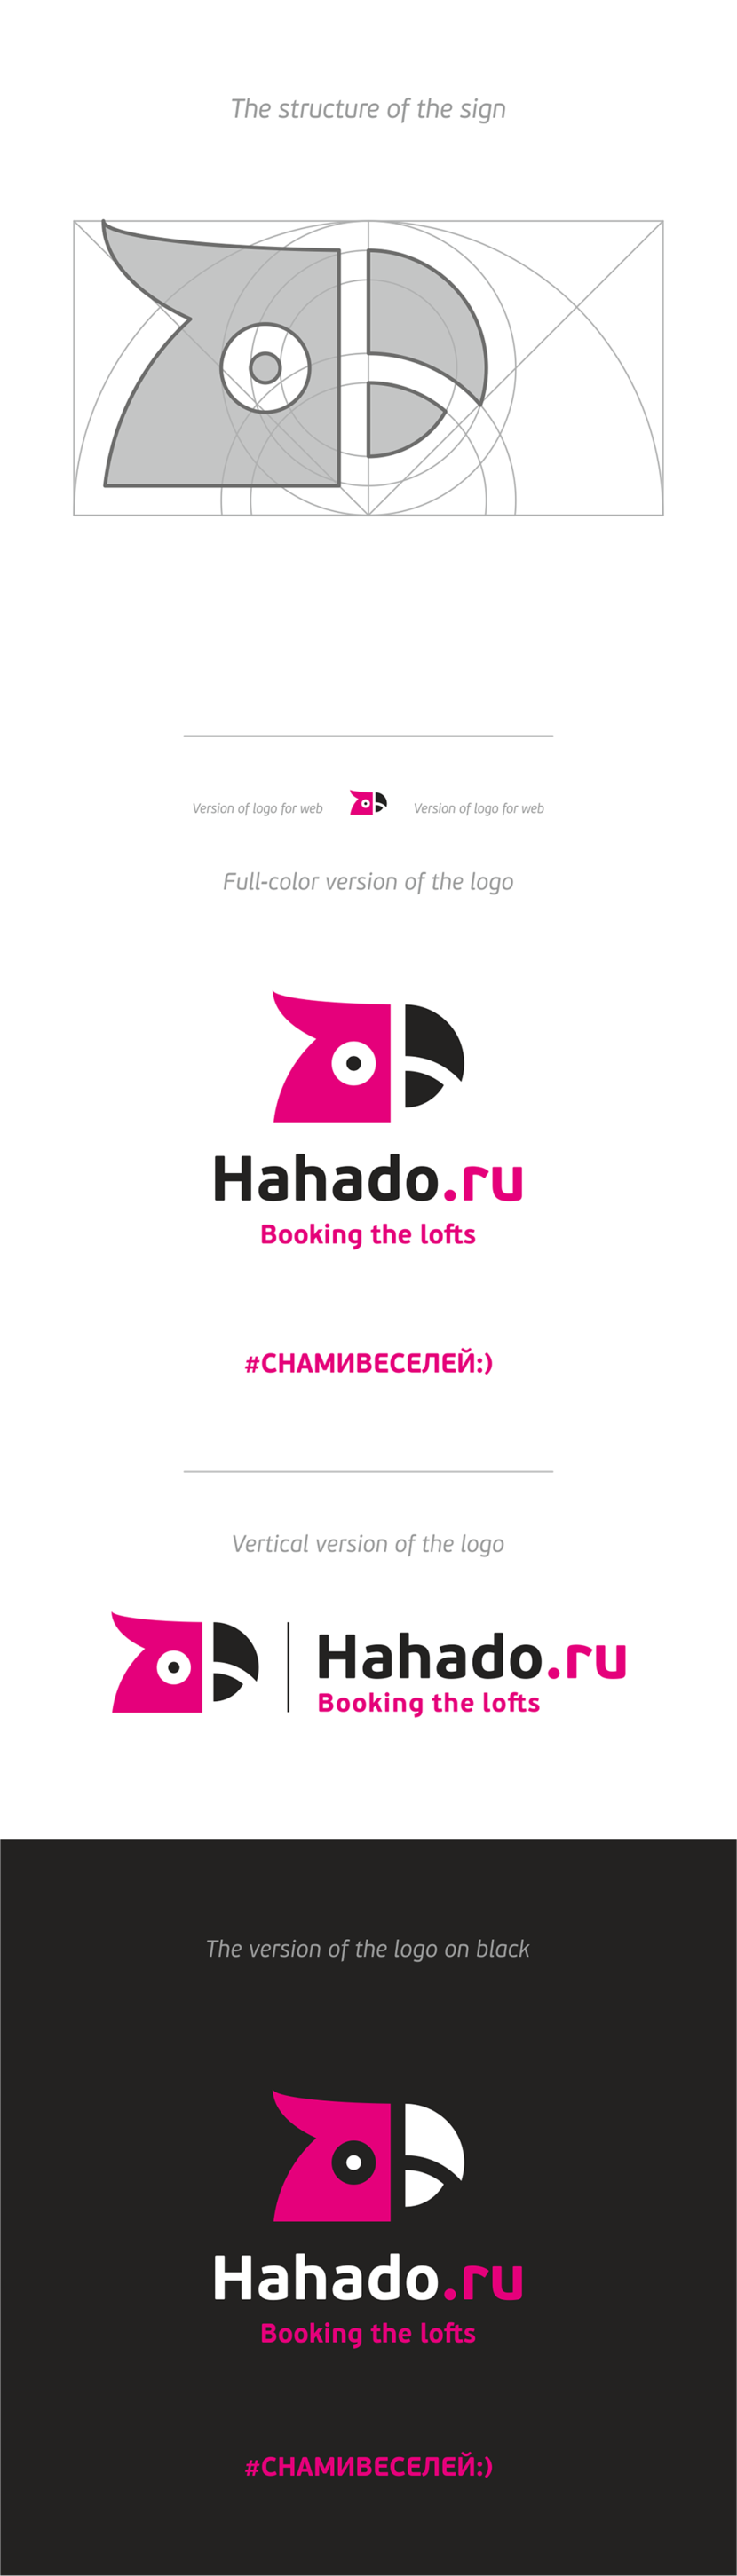 + либо так! - нужно подумать) - Лого для компании hahado.ru  (Хахаду) - сервис бронирования лофтов